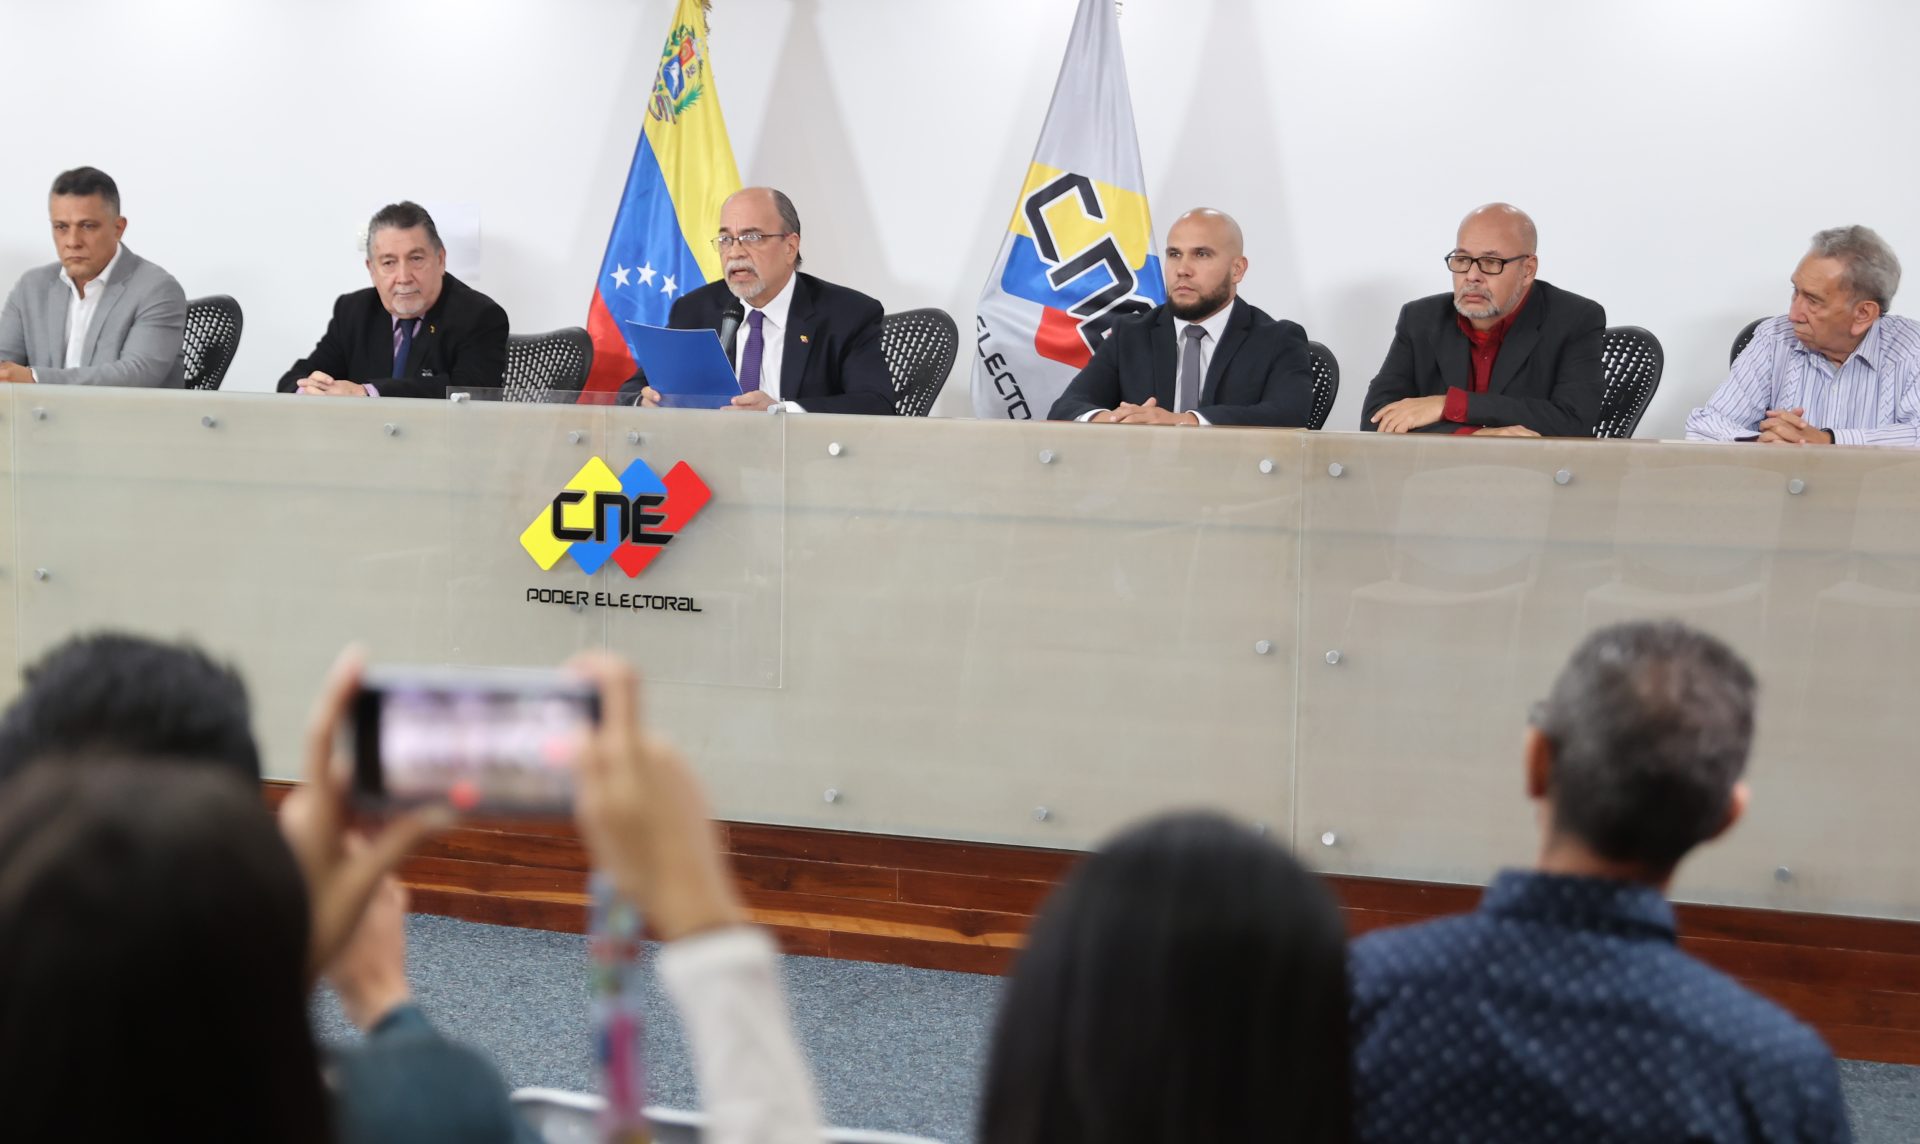 El Parlamento de Venezuela abre el proceso para nombrar nuevos rectores electorales tras la renuncia de la mayoría de ellos